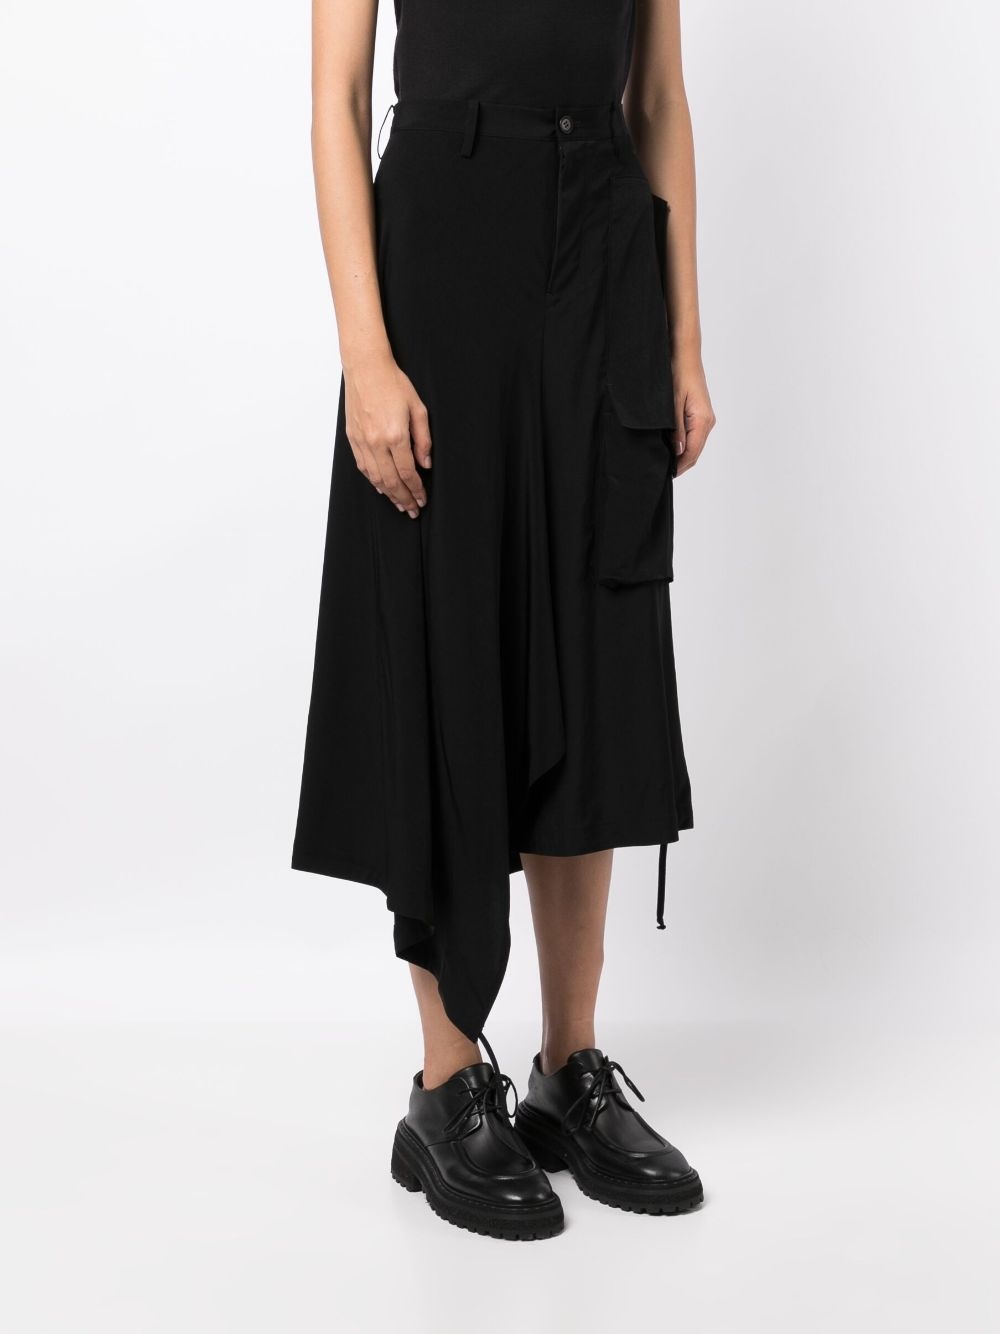 high-waisted asymmetric skirt - 3